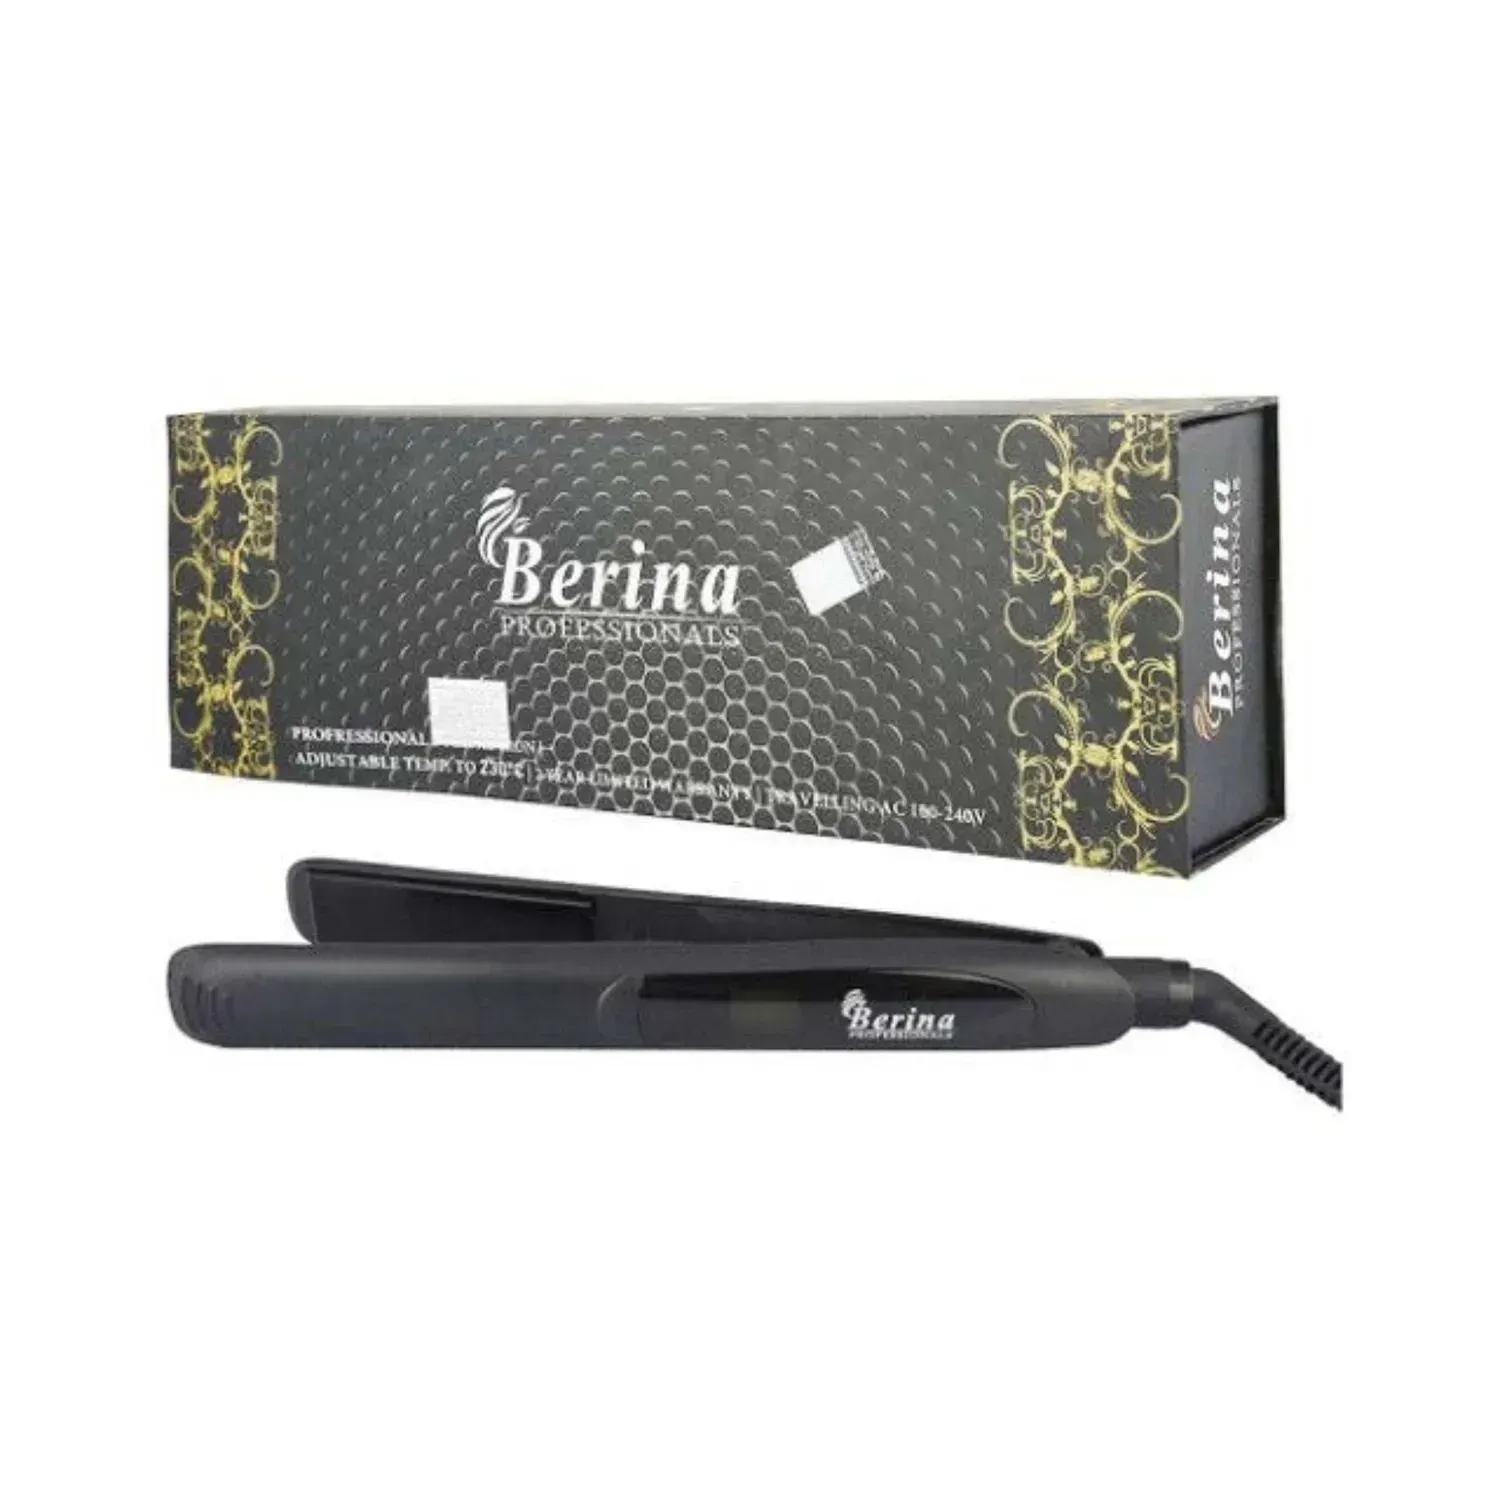 Berina | Berina Professional Digital Hair Straightener (BC-121)